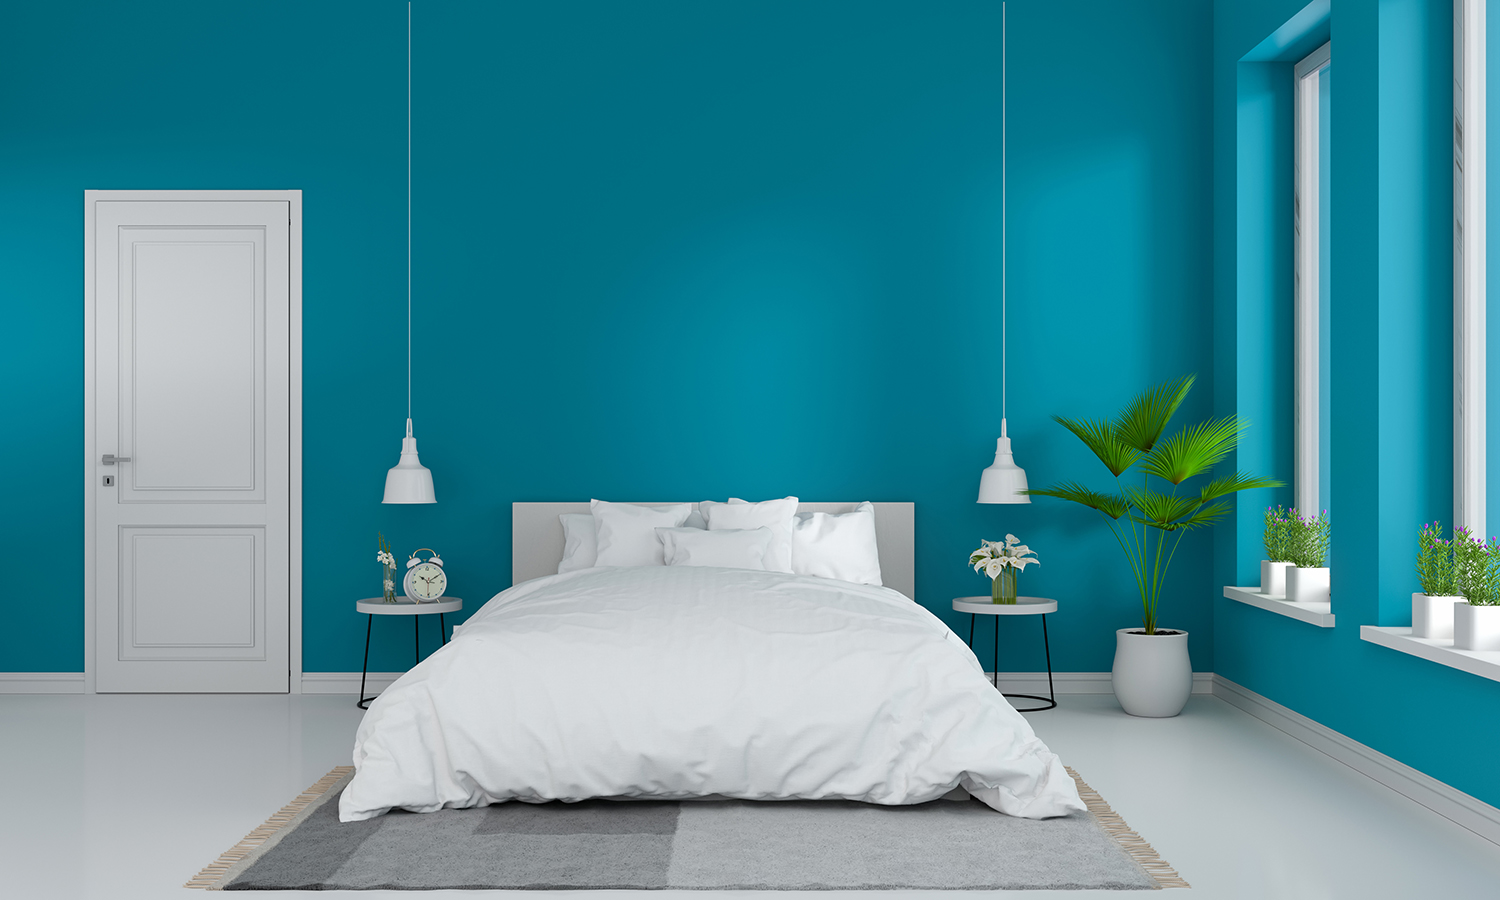 Rinnovare la camera da letto: carta da parati o tinteggio delle pareti? Colorificio Arcobaleno